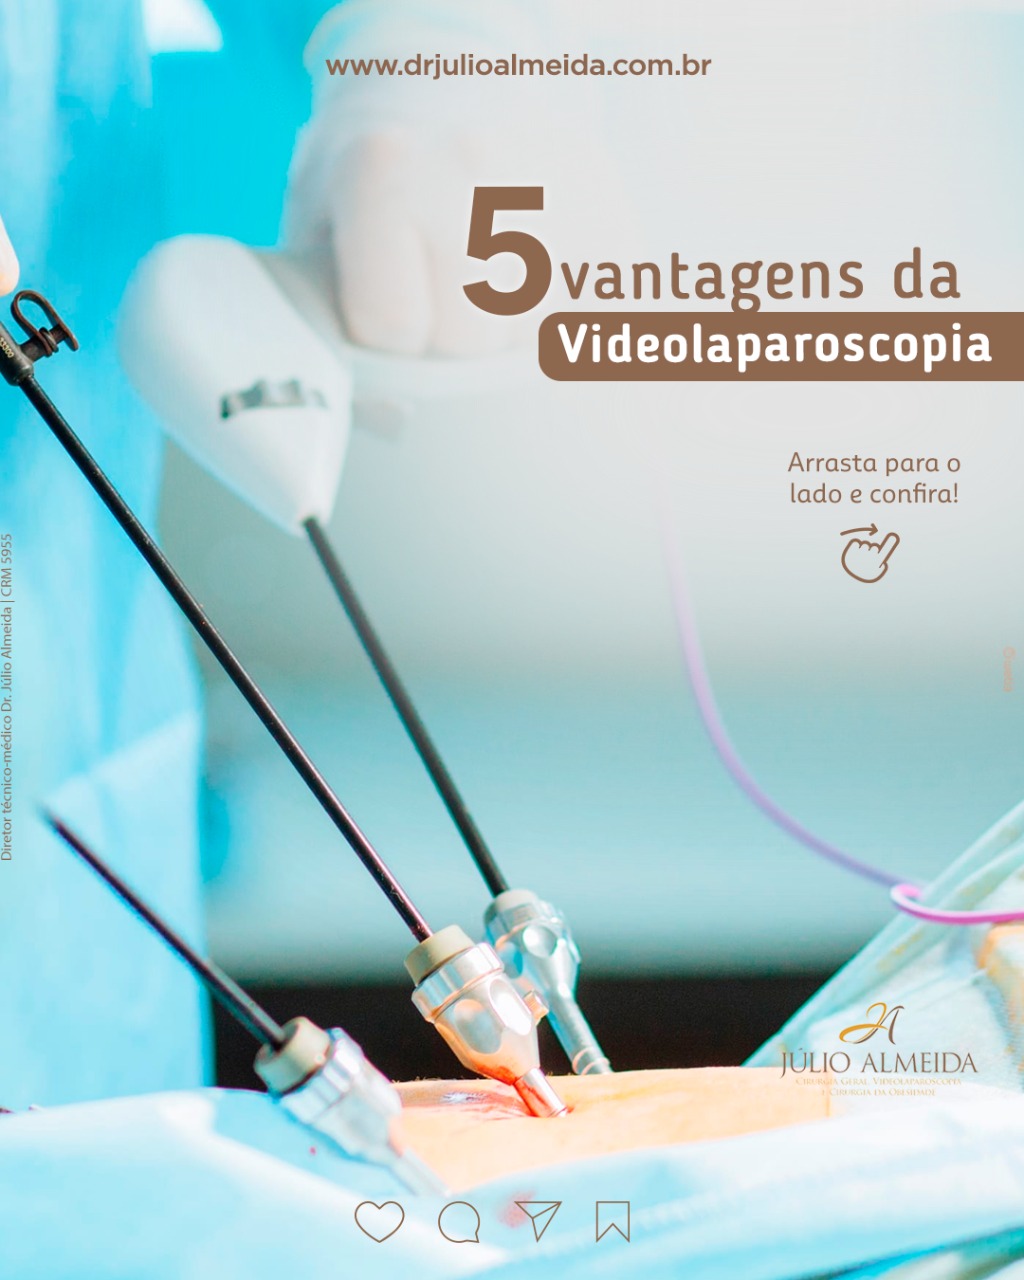 5 vantagens da Videolaparoscopia